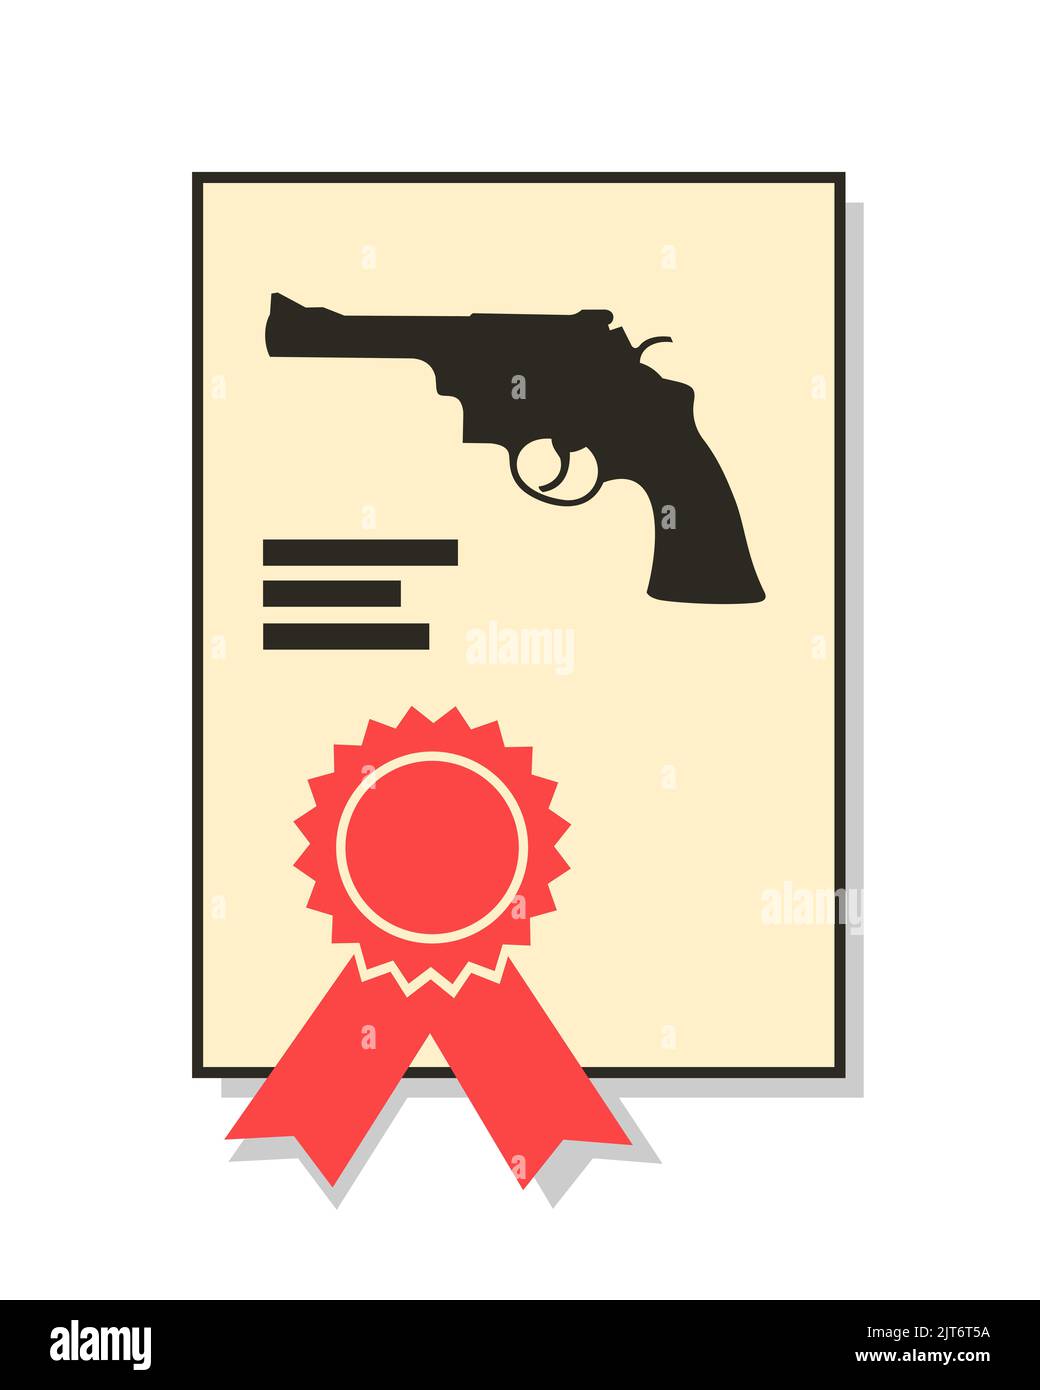 Permis d'armes à feu et permis d'armes à feu - document officiel de permission pour l'arme. Illustration vectorielle isolée sur blanc. Banque D'Images